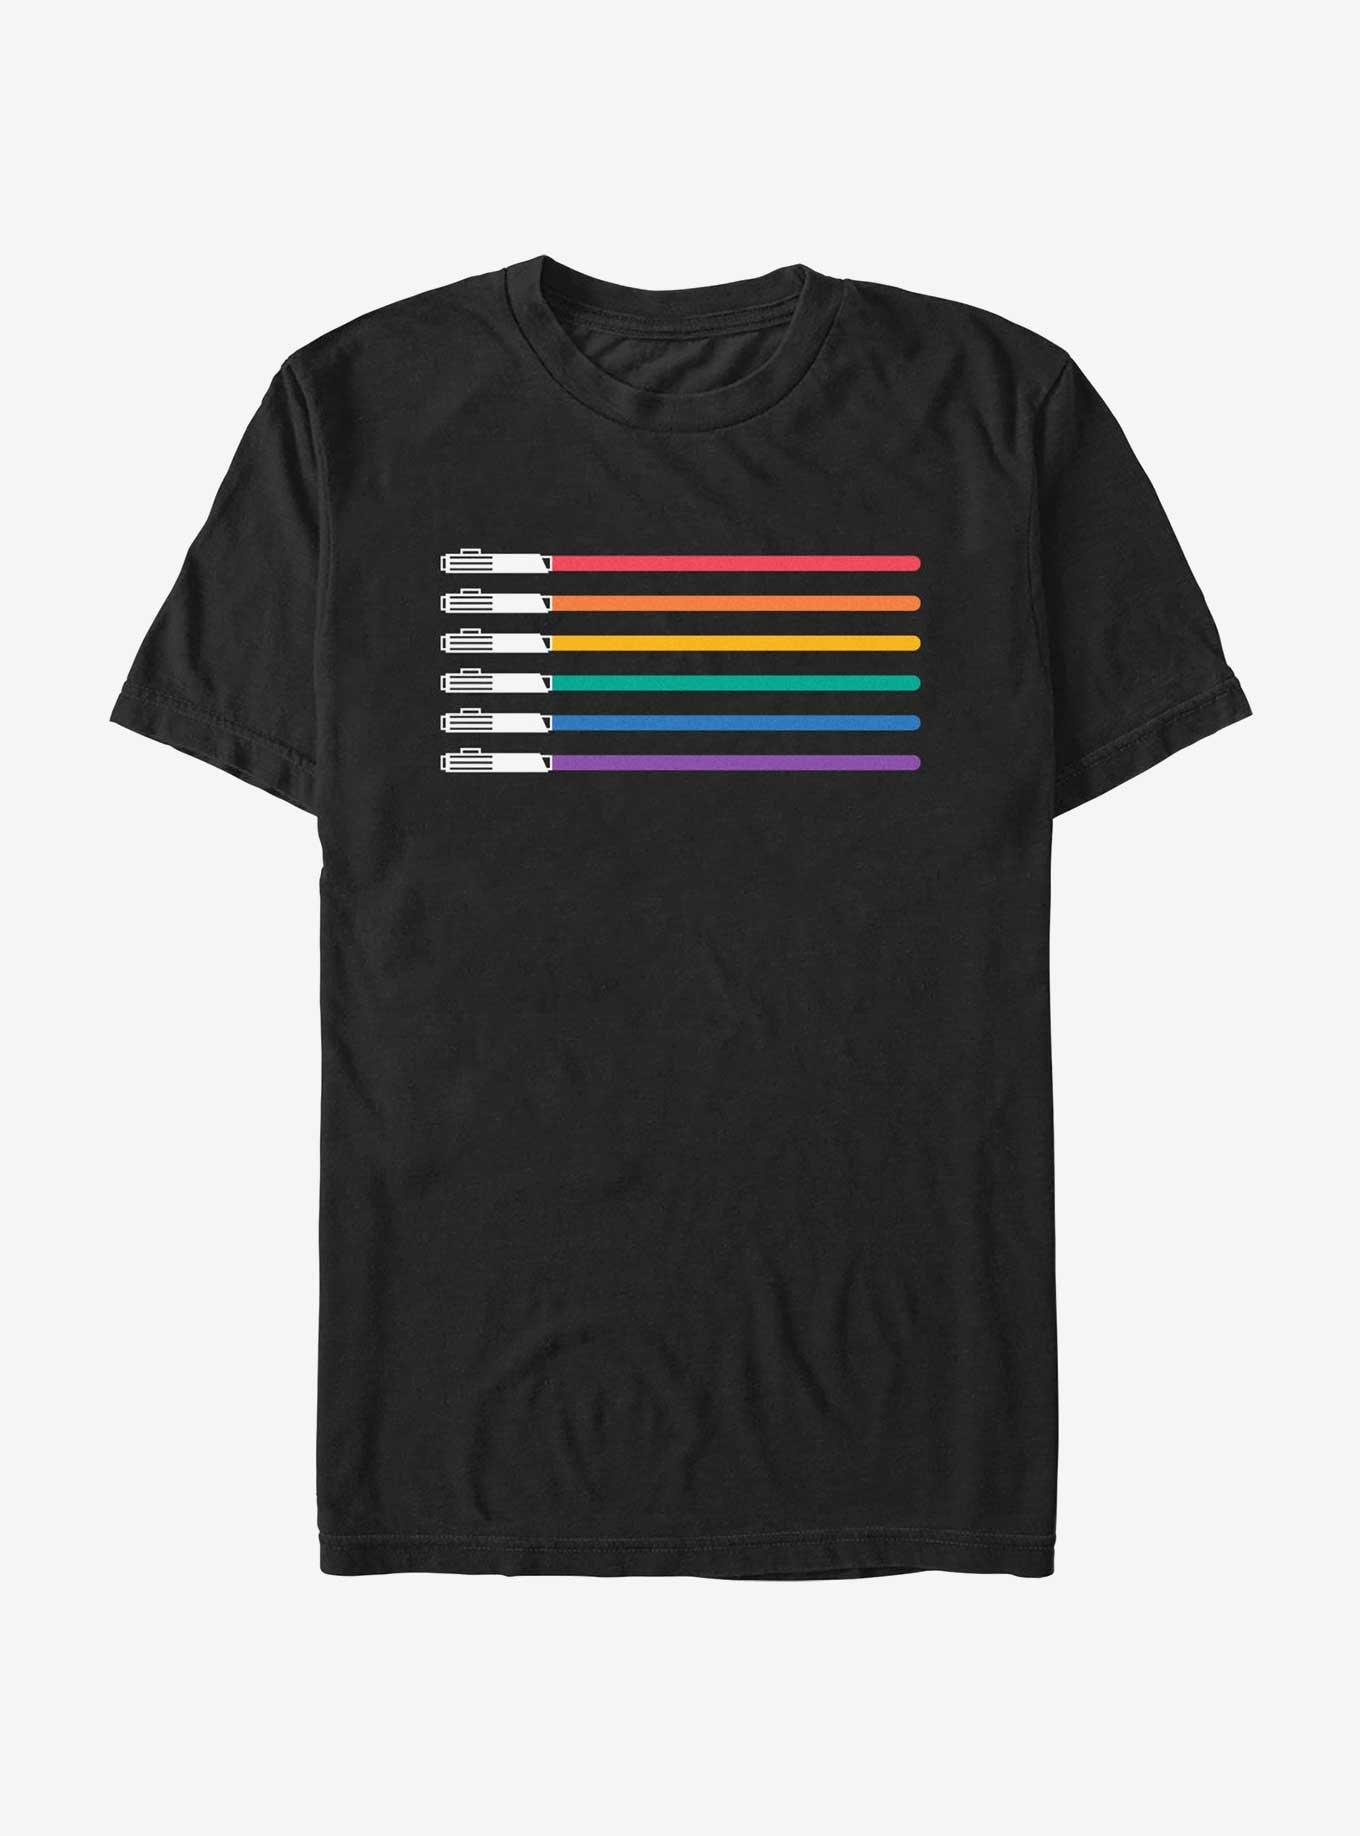 Star Wars Lightsaber Pride Flag T-Shirt